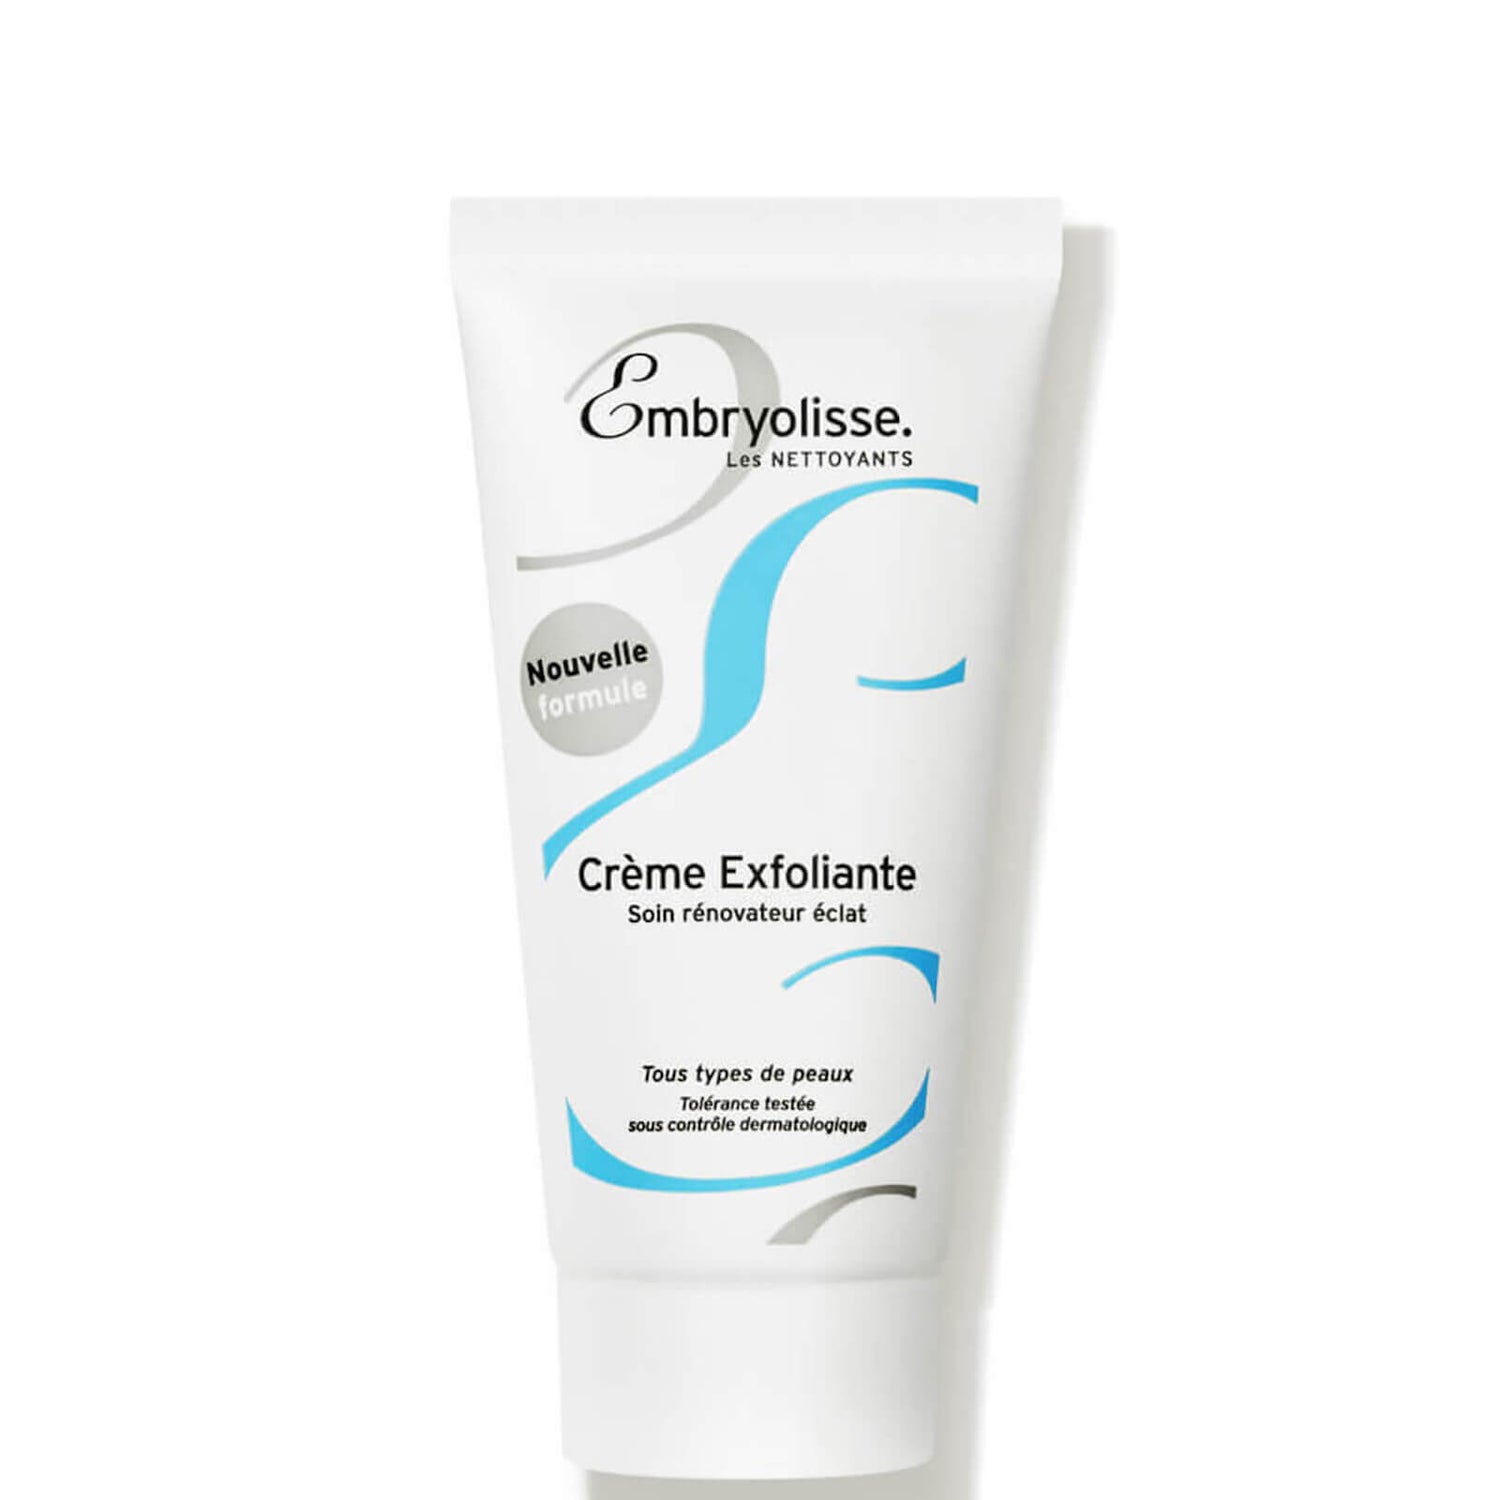 Embryolisse Creme Exfoliante - Creme Exfoliating Cream (1.9 fl. oz.)